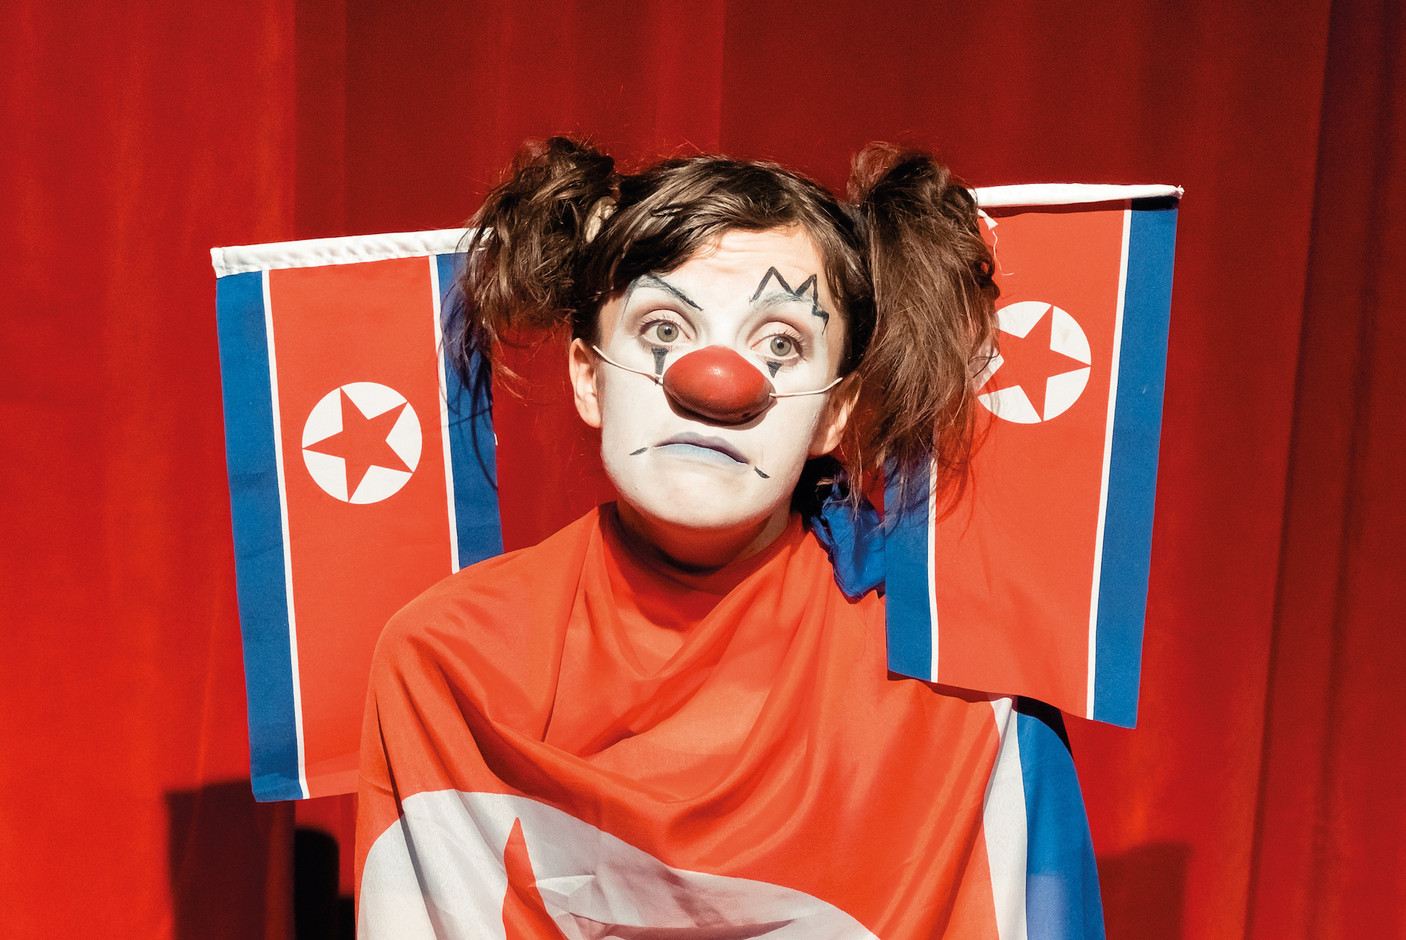 Des clowns qui reviennent de Corée du Nord... C'est l'argument d'Olivier Lopez & La Cité, le 24/10 au Kinneksbond. (Photo: Alban Van Wassenhove)